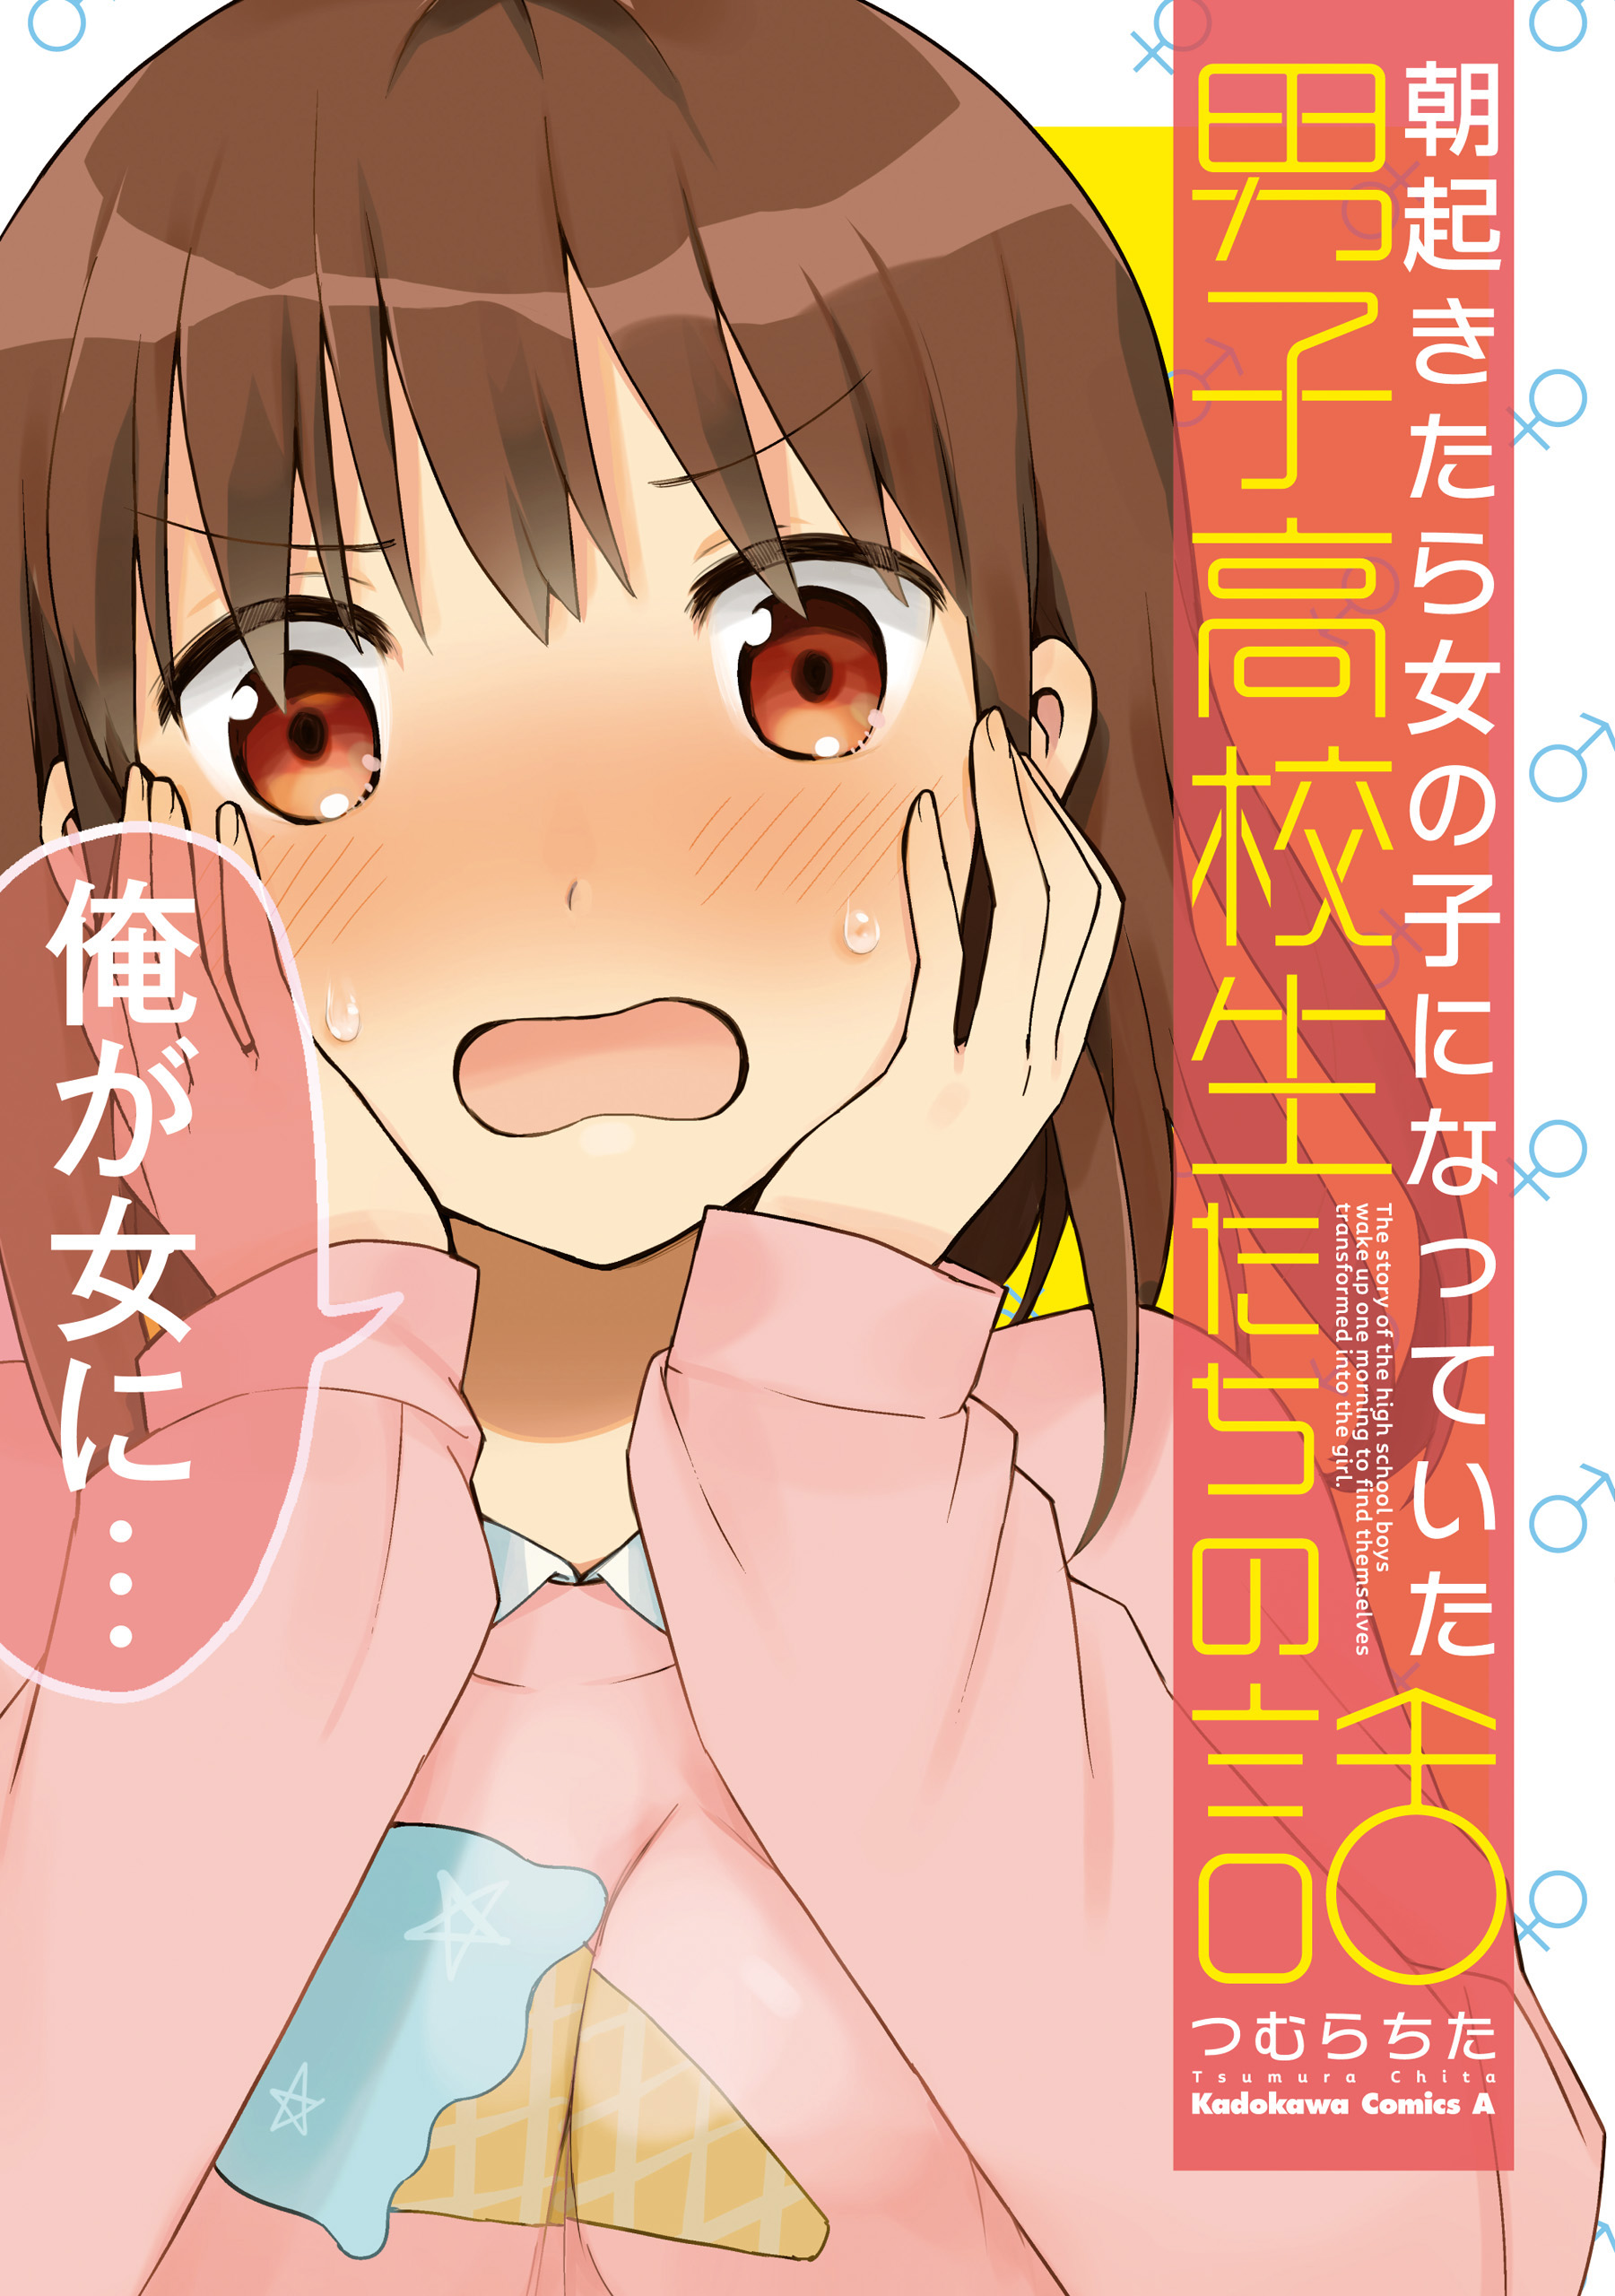 A Manga About High School Boys Who Woke Up As Girls One Morning manga